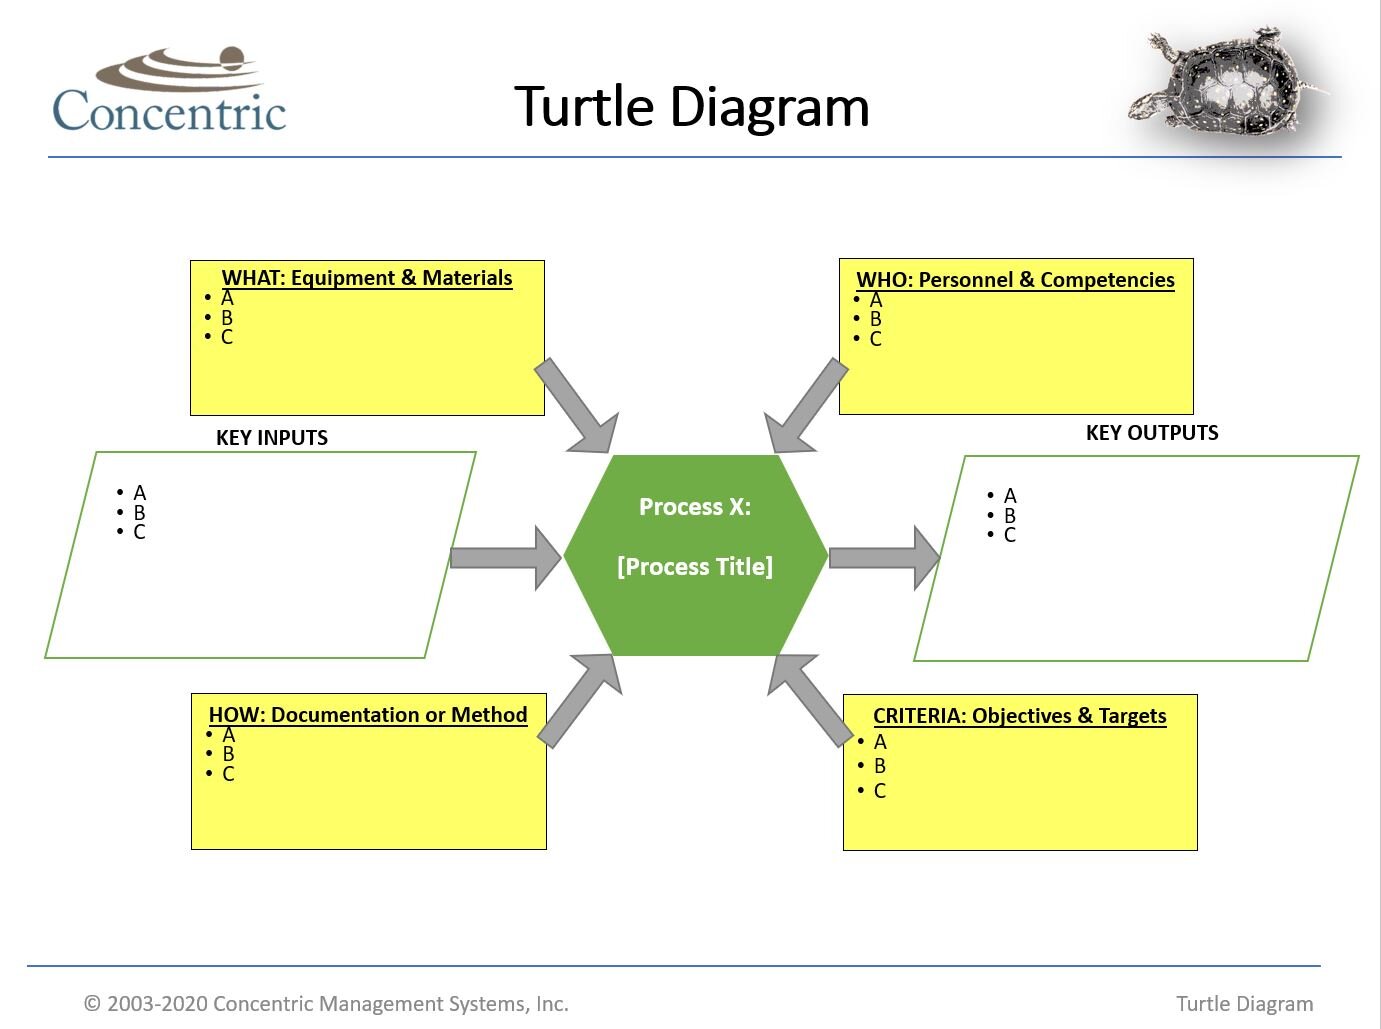 turtle diagram